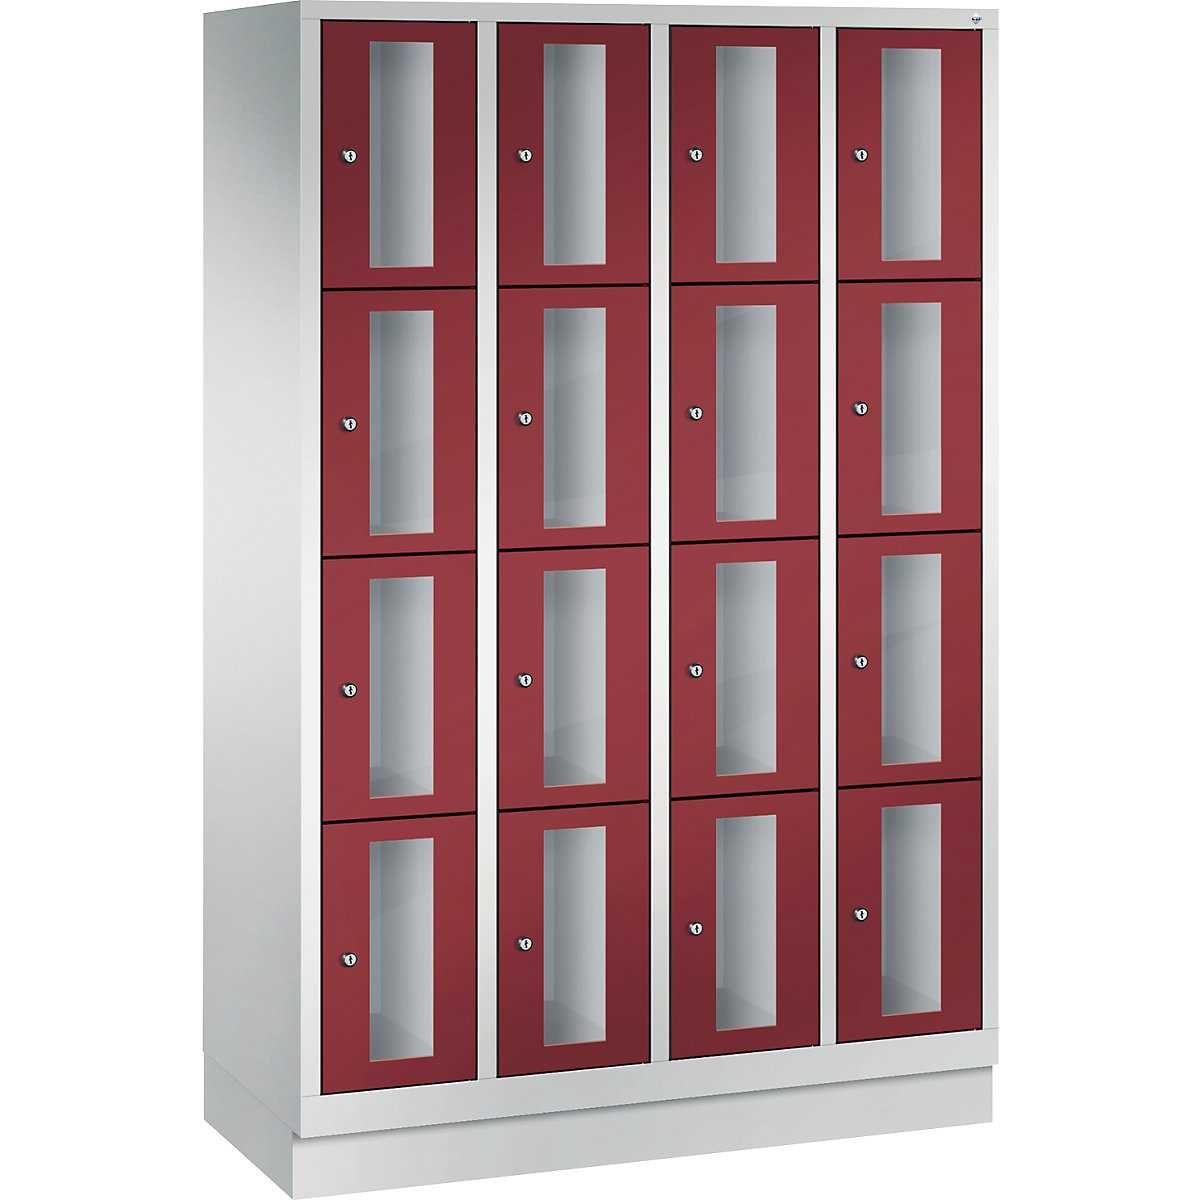 C+P – Armario de compartimentos CLASSIC, altura de compartimento 375 mm, con zócalo, 16 compartimentos, 1190 mm de anchura, puerta en rojo rubí